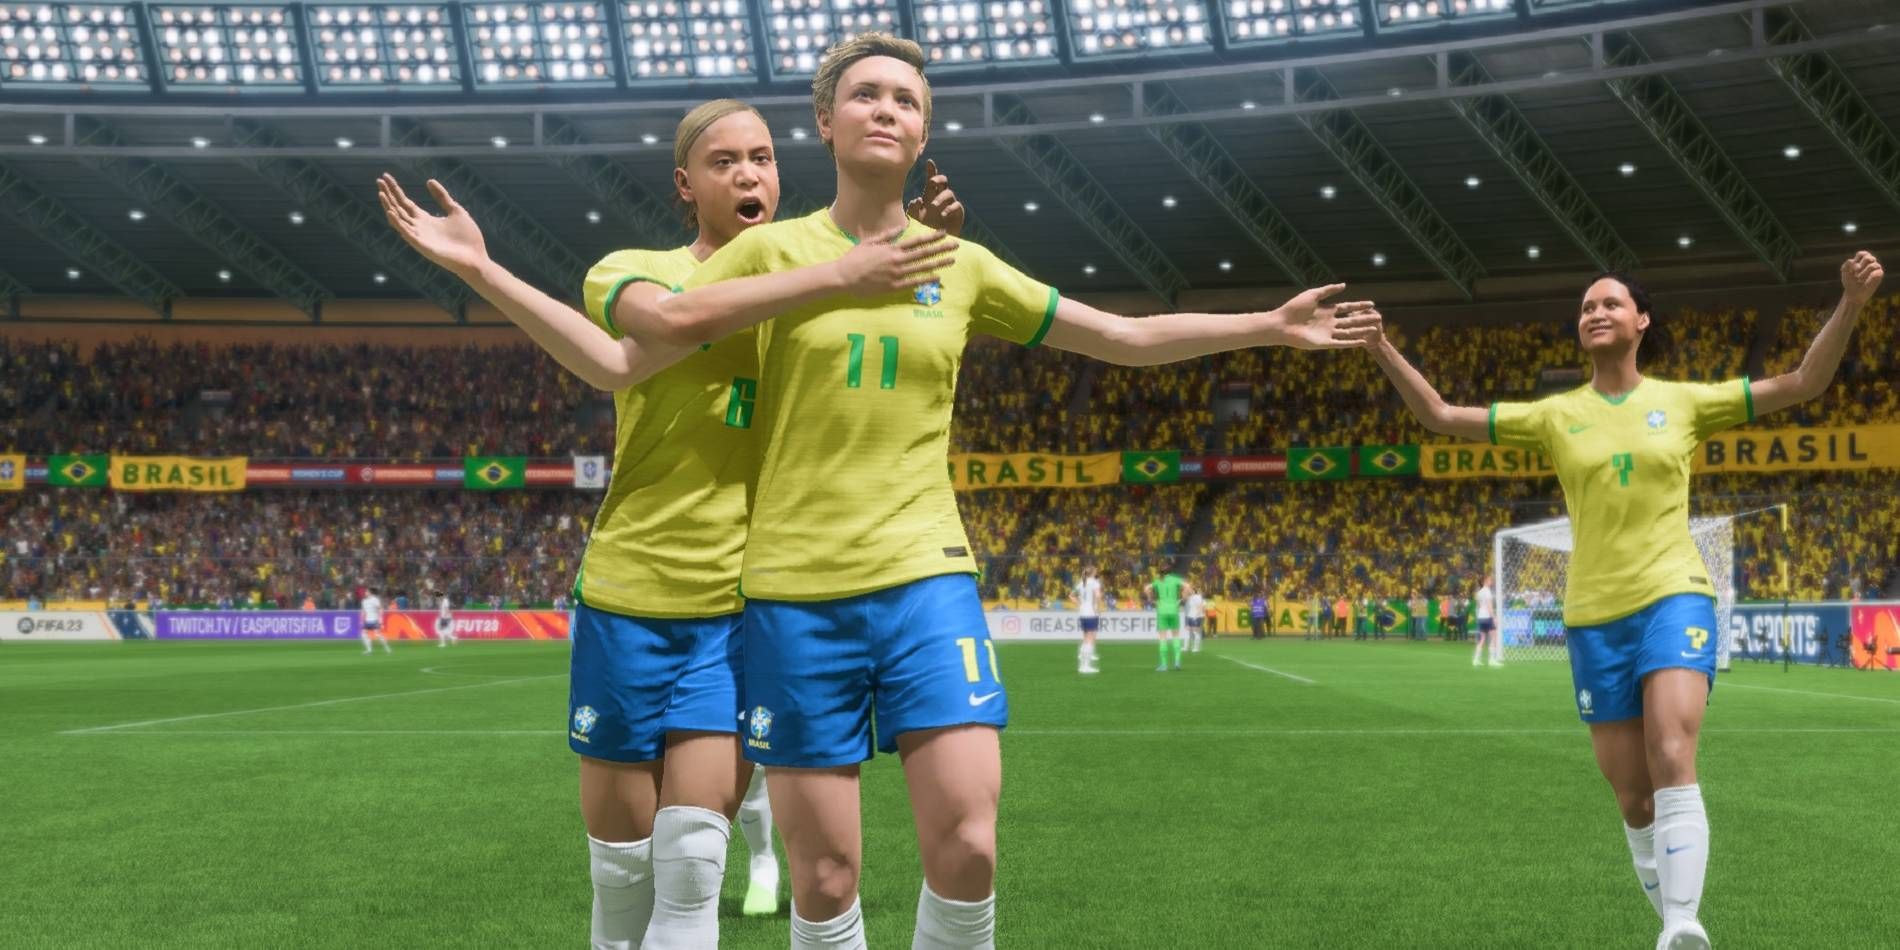 Jogadores Mais Bugados do FIFA 23 por Posição - Blog Futrading